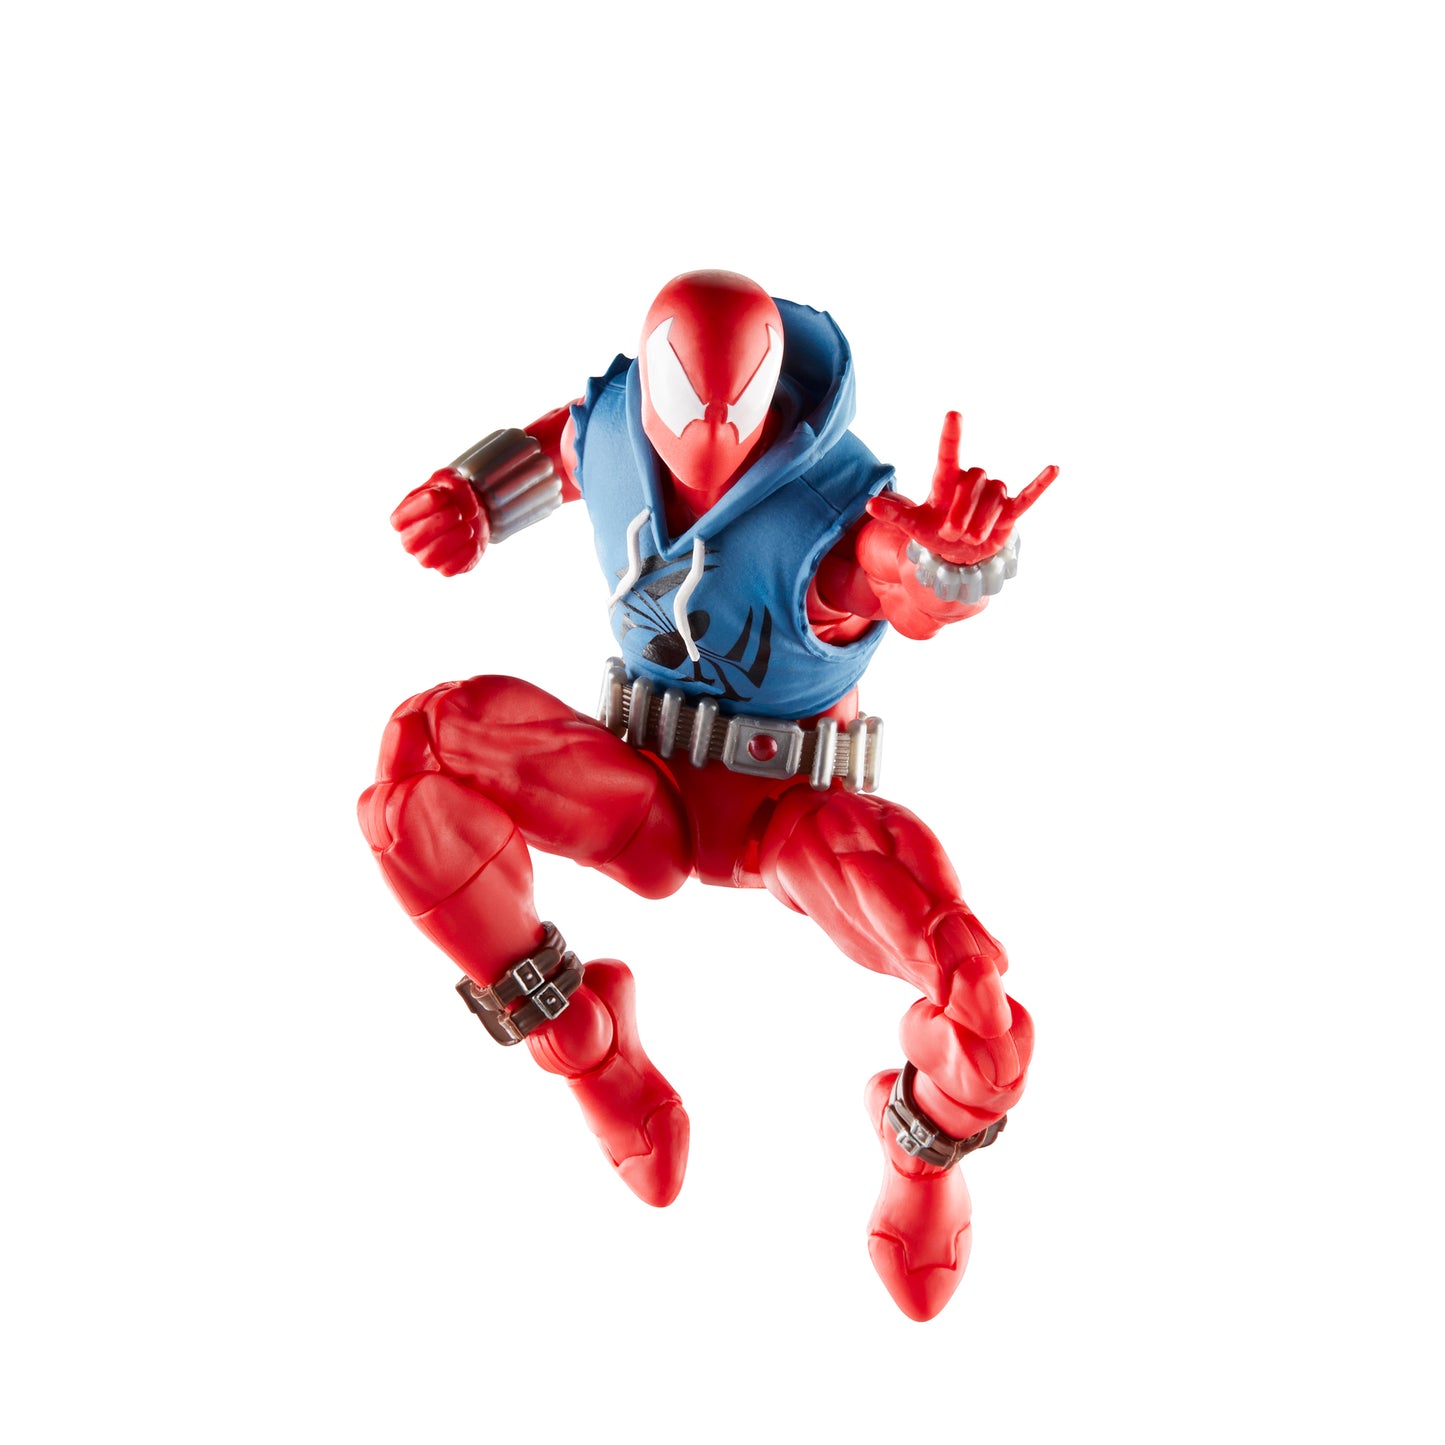 Marvel Legends Series Scarlet Spider Action Figure Toy